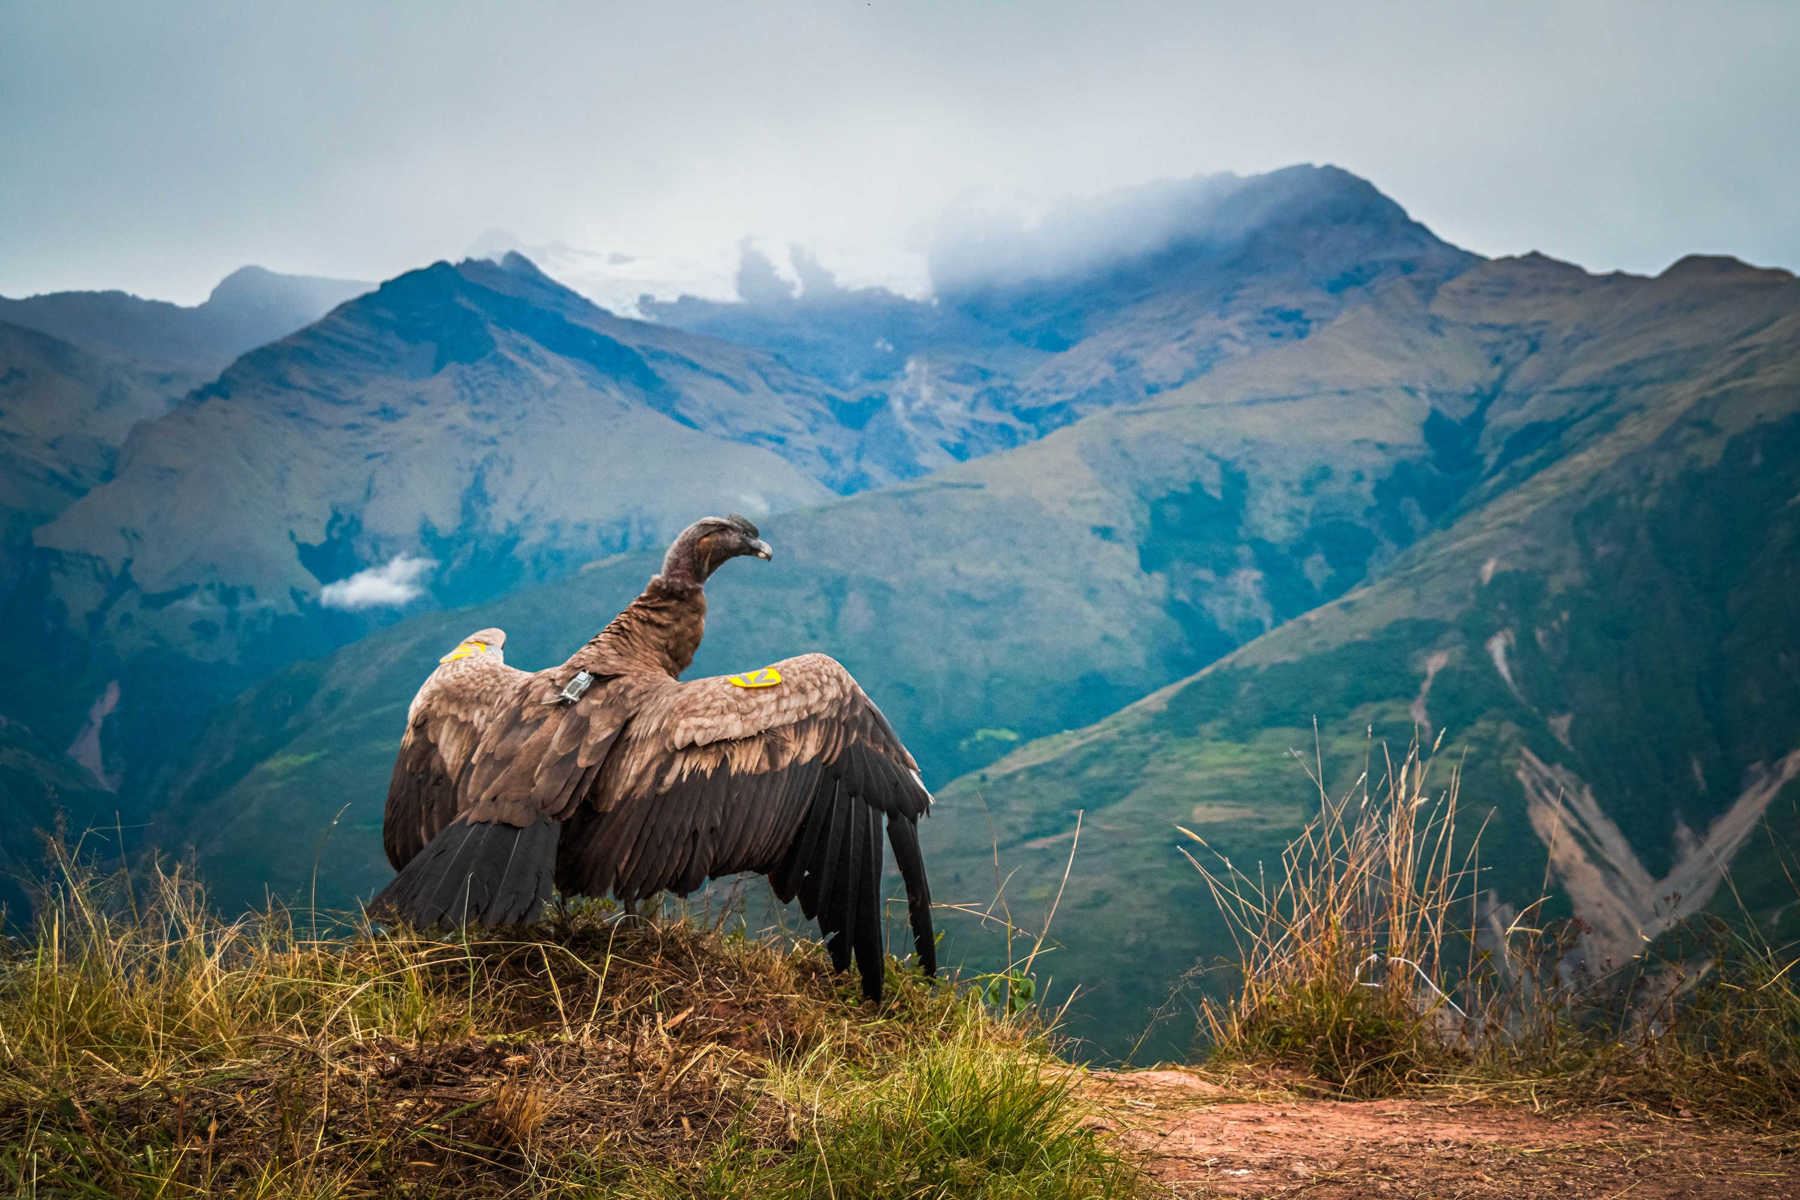 El ave, un macho de unos 6 años de edad, voló de vuelta a su hábitat desde el Cañón de Apurímac, en el departamento que lleva el mismo nombre, en el corazón de los Andes peruanos y a más de 3.000 metros de altura, informaron fuentes oficiales en un comunicado. Foto: EFE